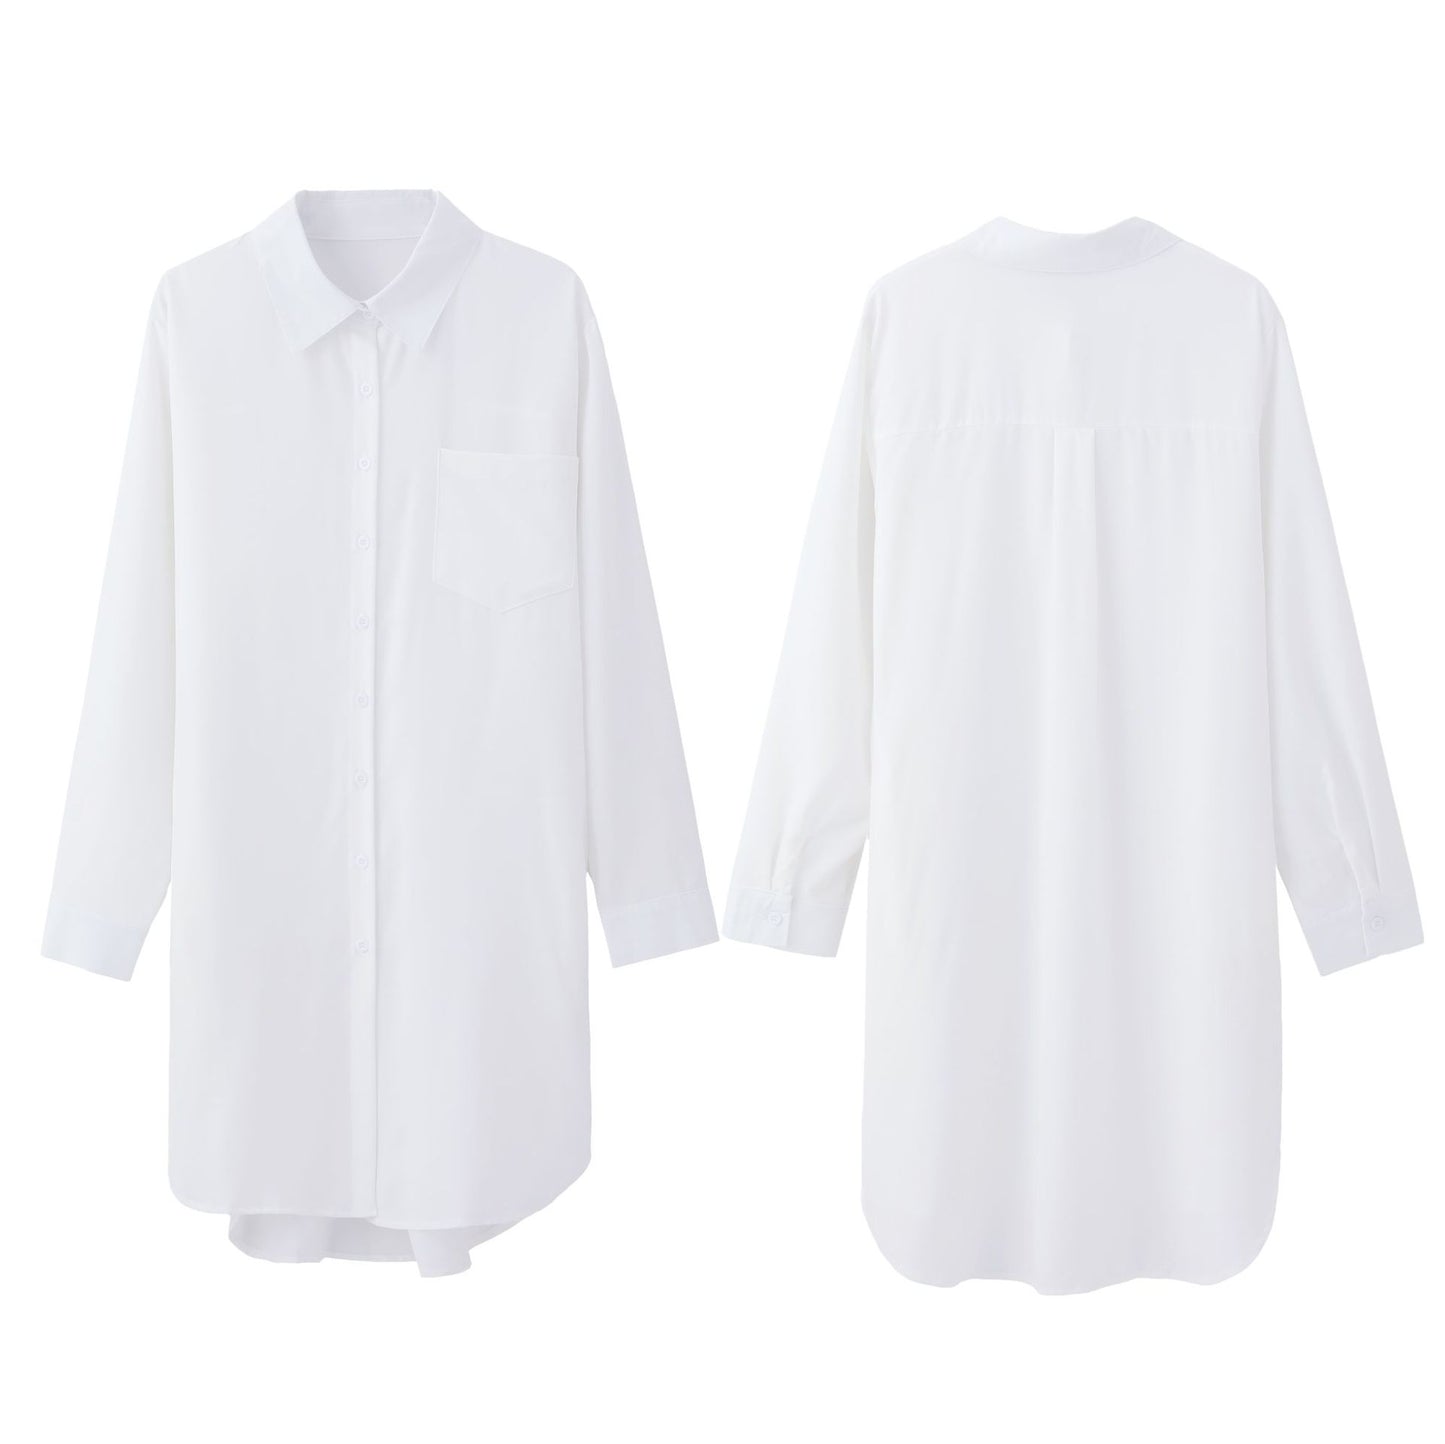 Elegant Long Sleeve Shirt Women - ROMART GLOBAL LTD